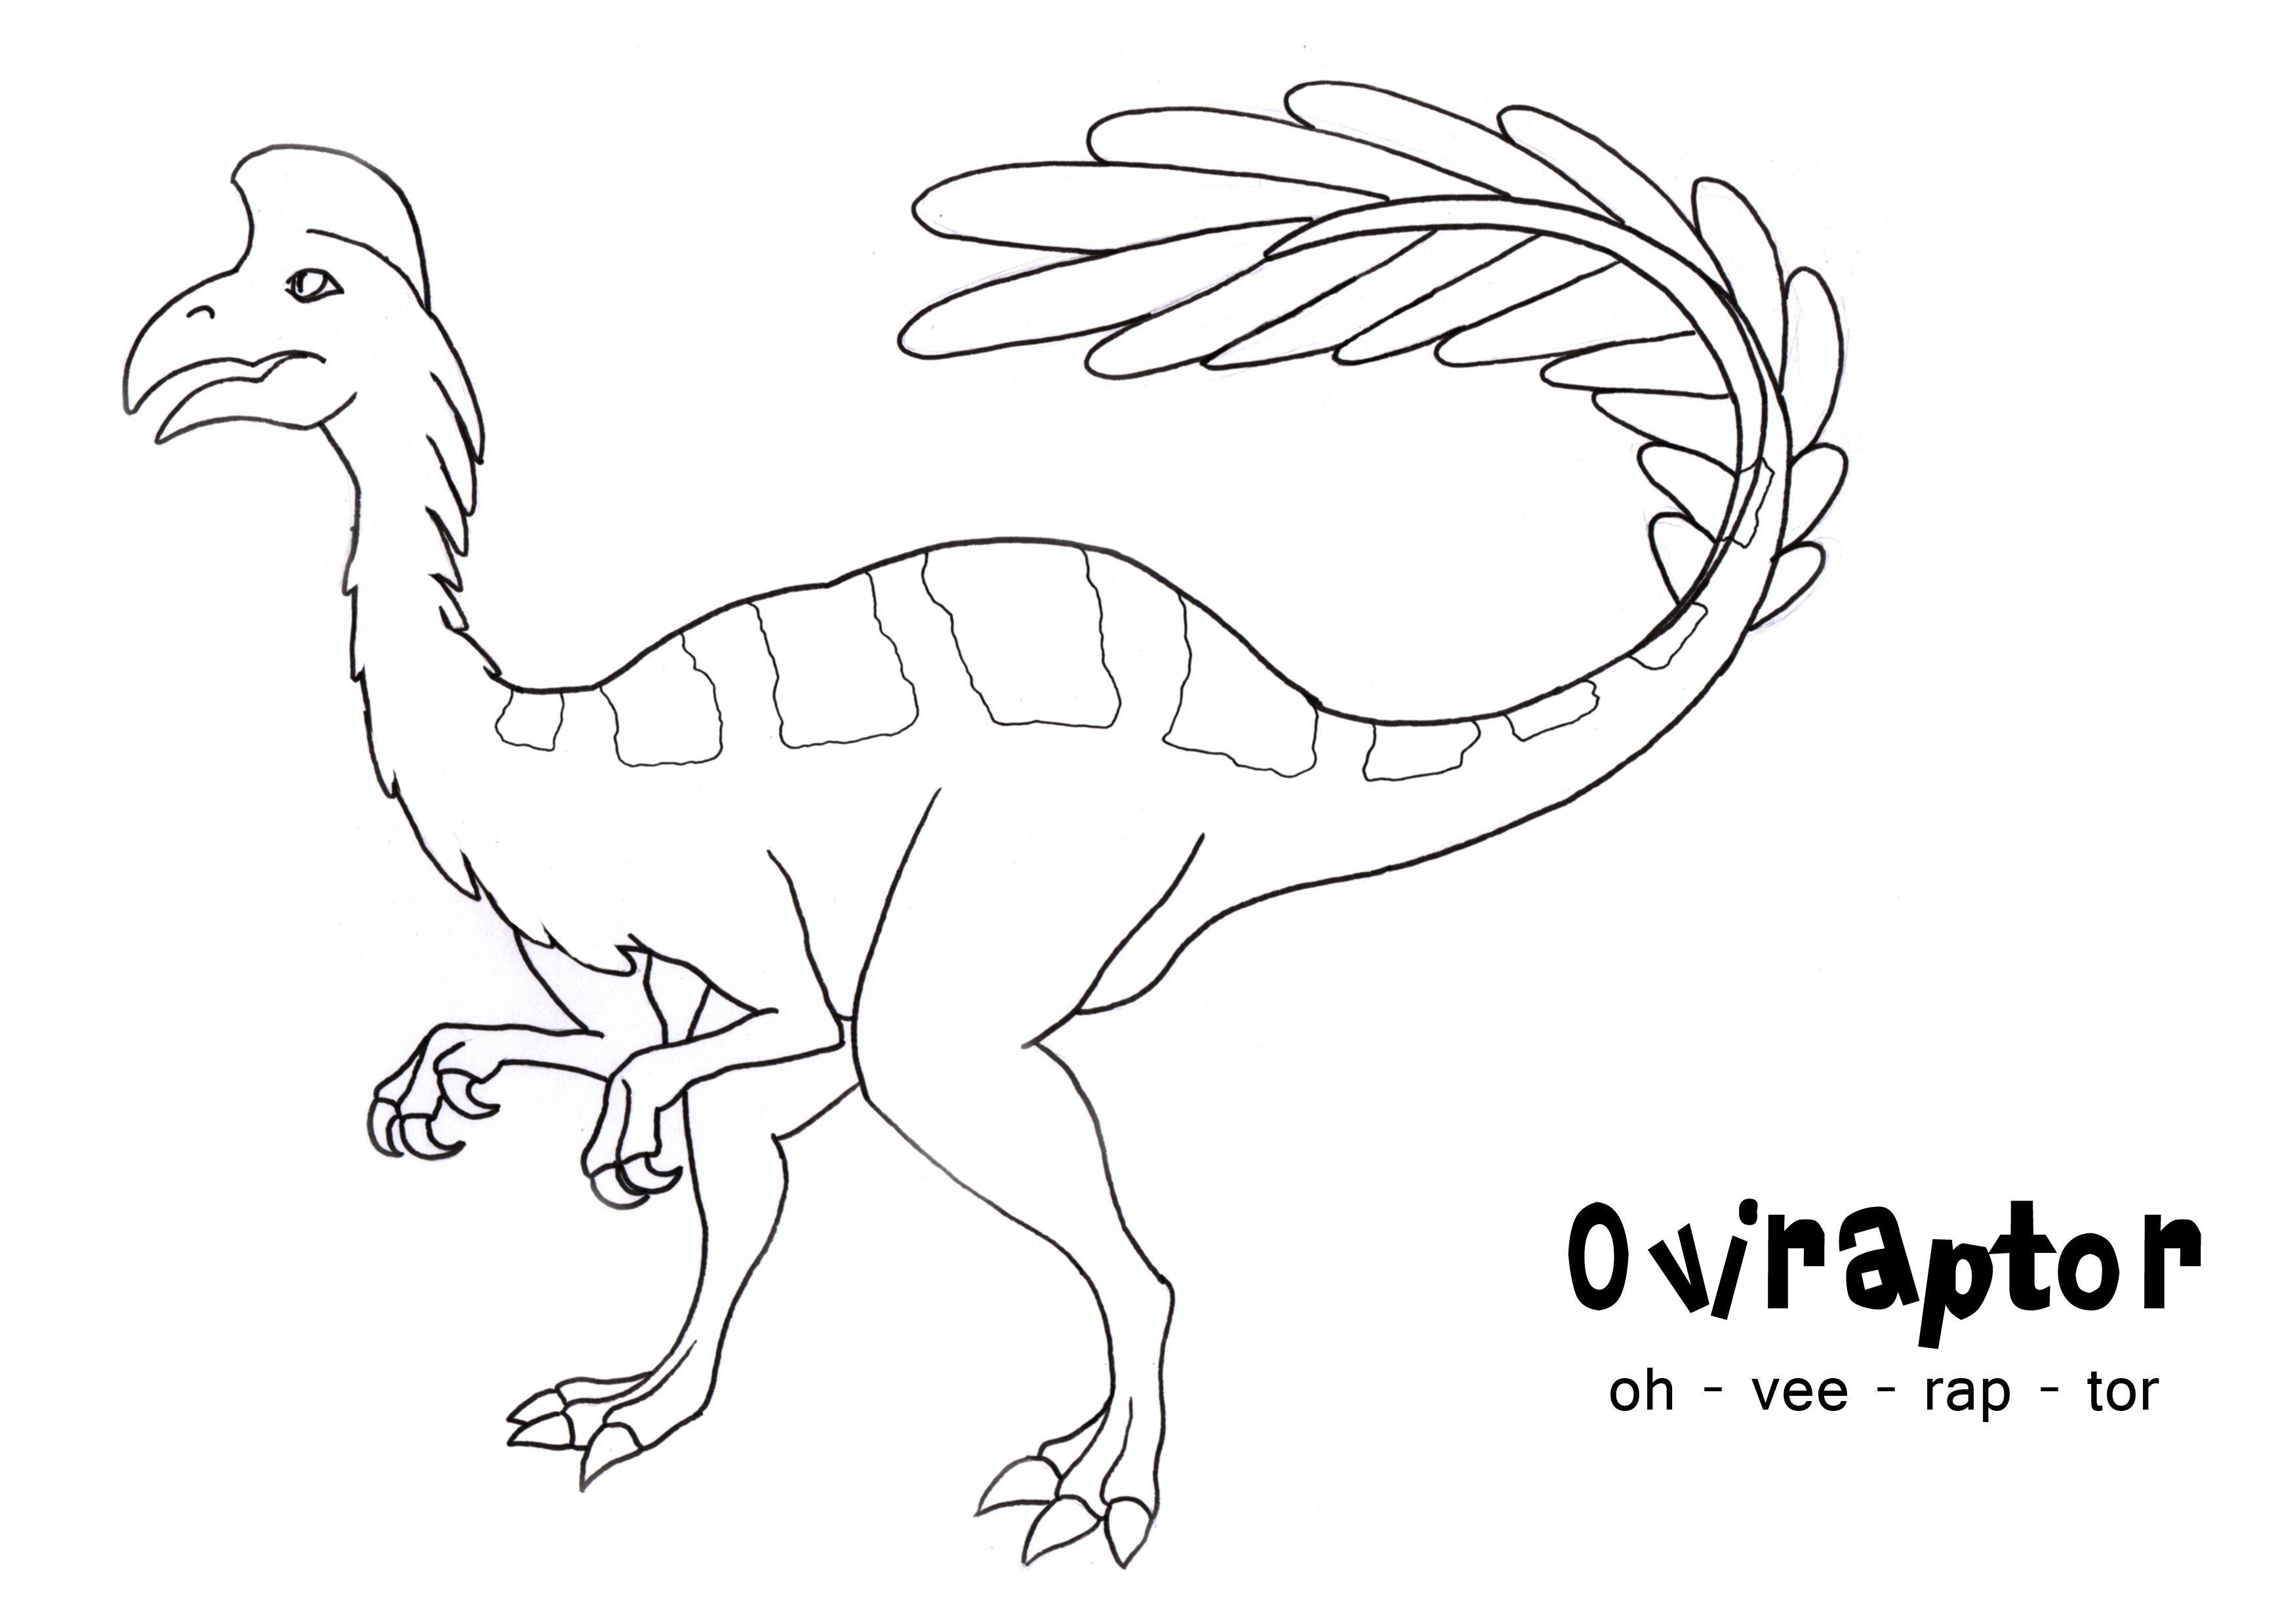 Oviraptor est un genre de dinosaure à plumes de type Archaeopteryx d'Archeopteryx